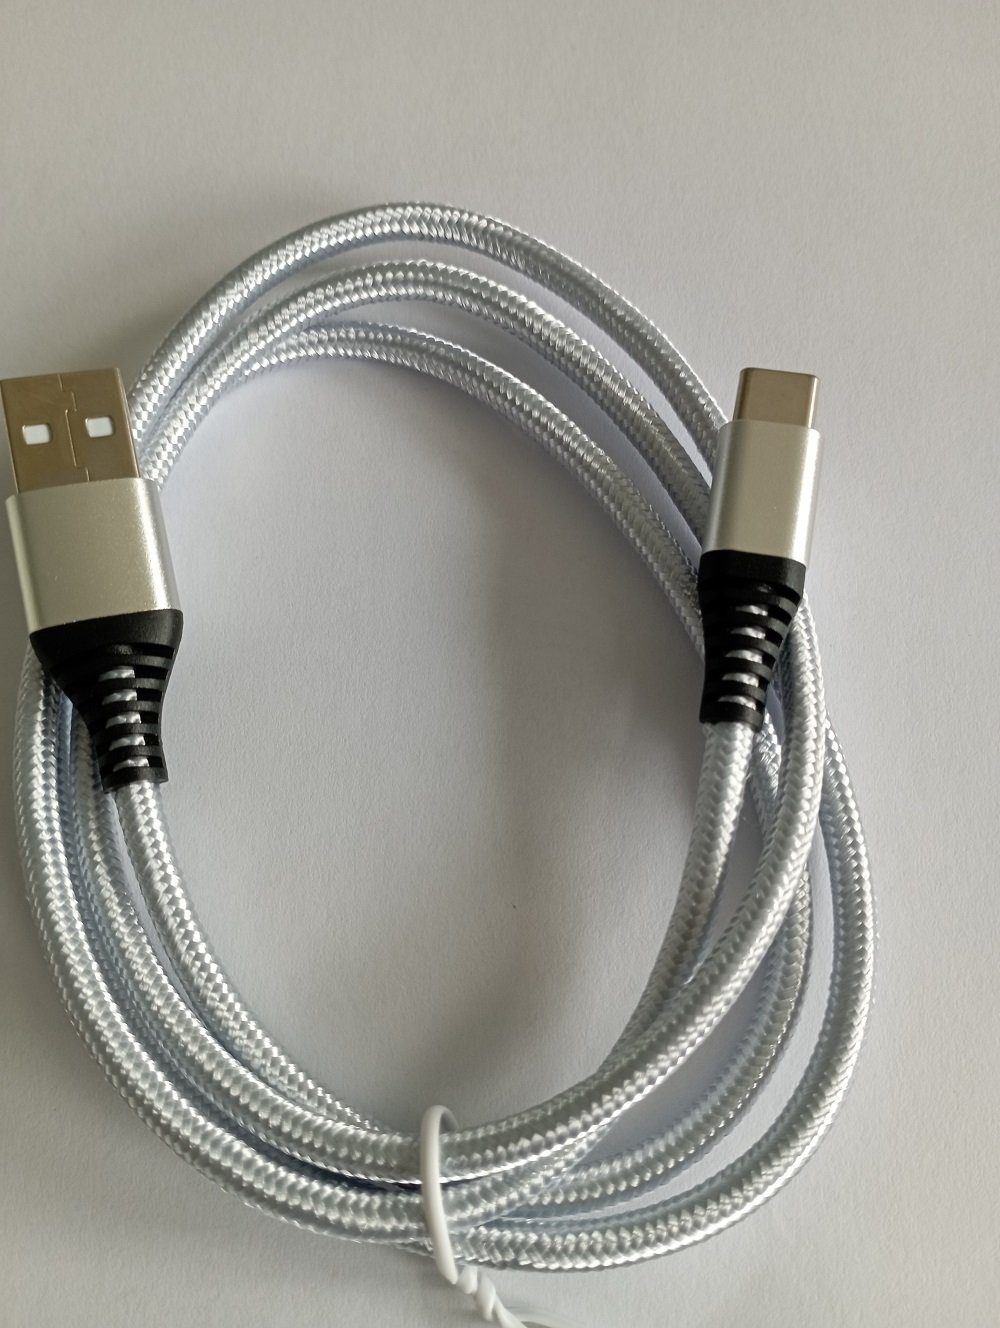 Handy Ladekabel für Samsung / Huawei / Google Handy USB-C zu USB